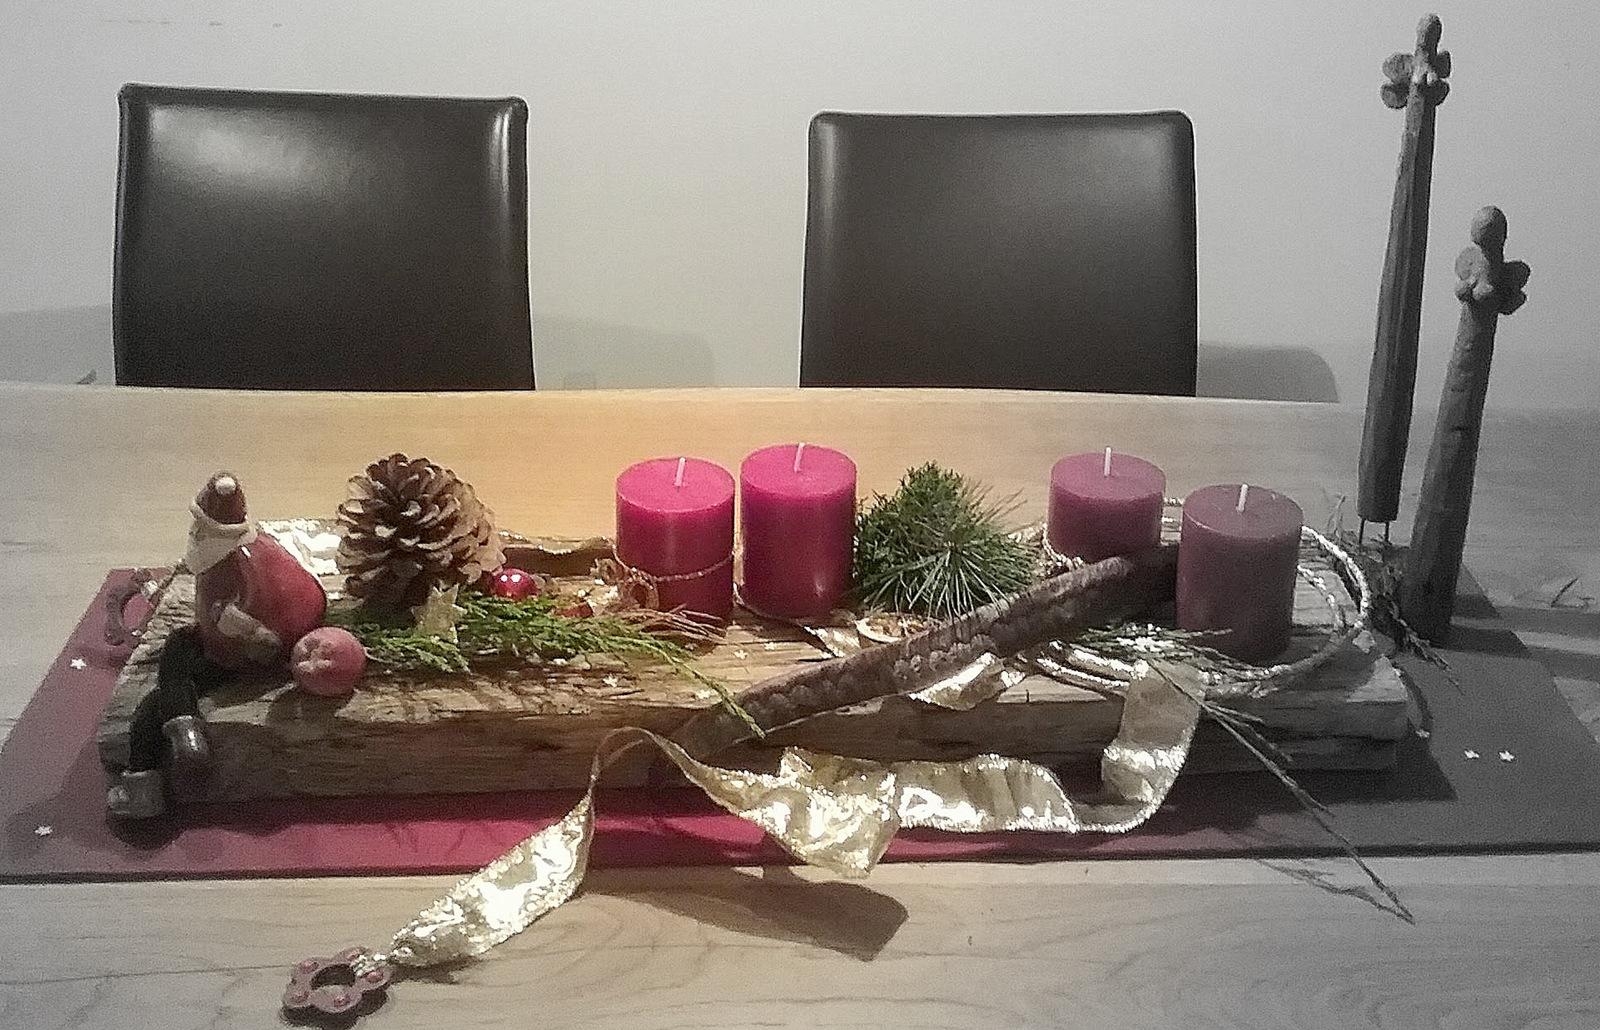 meine #Tischdeko auf einem #Holzbrett #Advent #Treibholzengel #Adventkranz #Deko #Weihnachten #Kerzen 